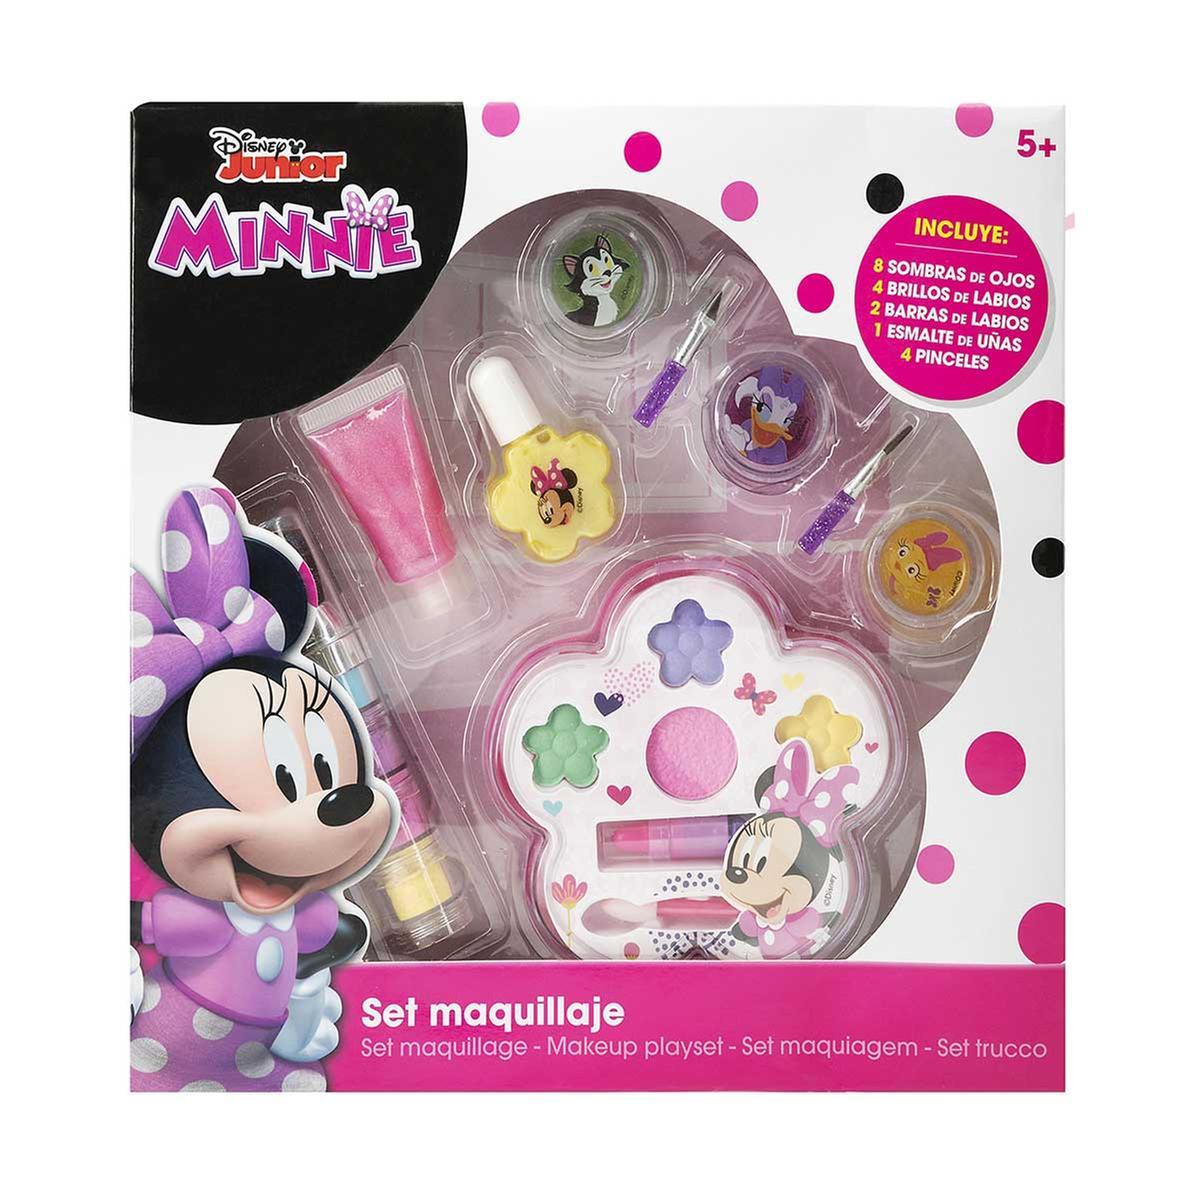 Minnie Mouse - Set de Maquillaje | Minnie Mouse. Cat 54 | Toys"R"Us España